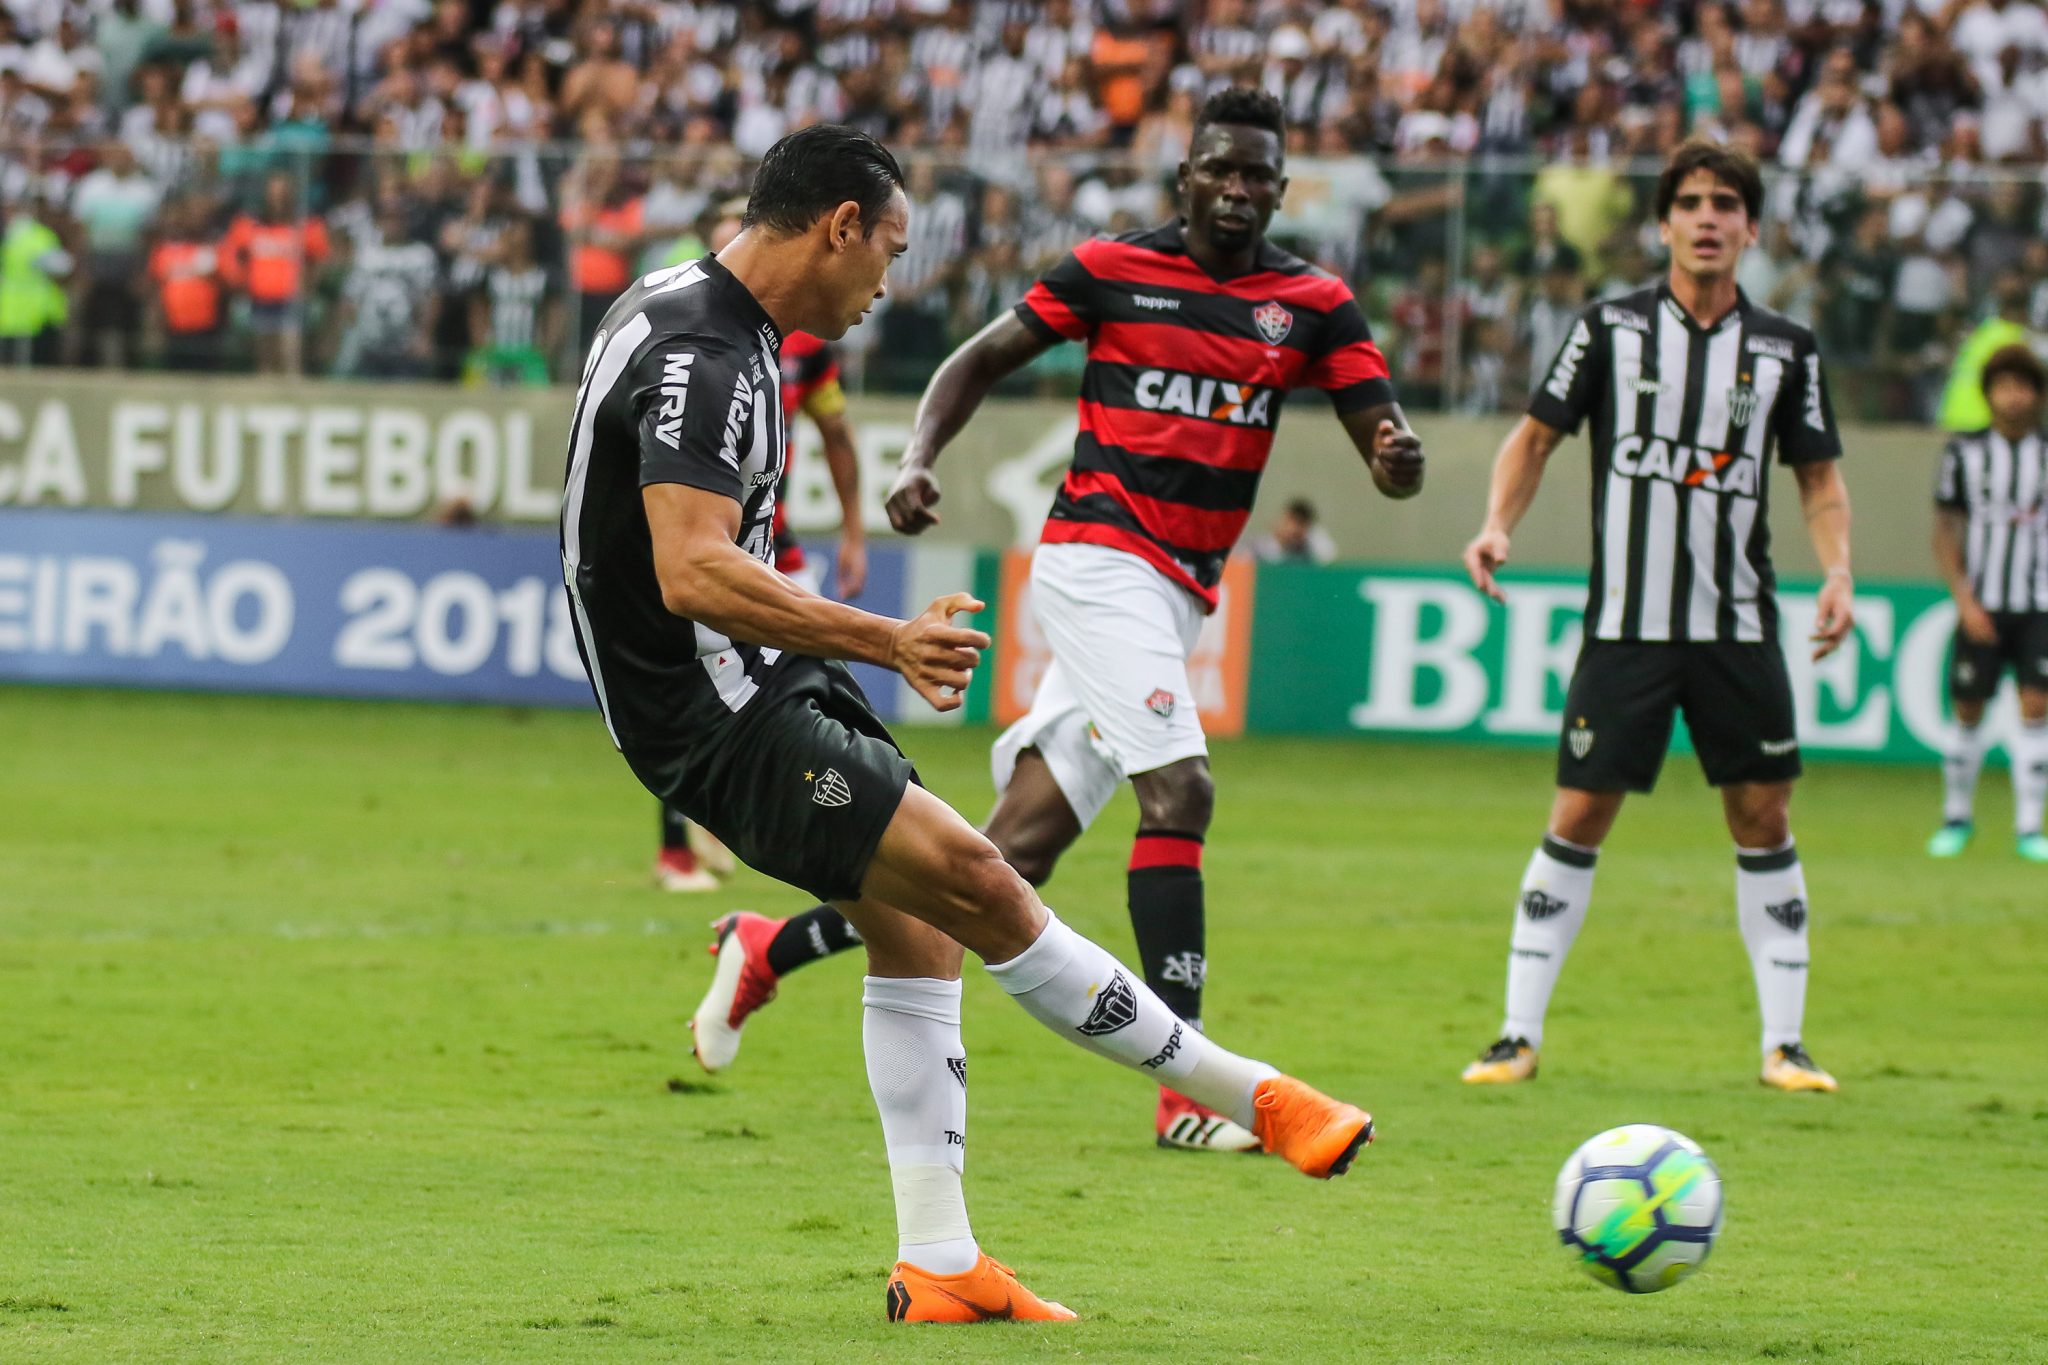 26763569457 1877a45156 o - Ricardo Oliveira brilha, Galo bate Vitória e interrompe série negativa